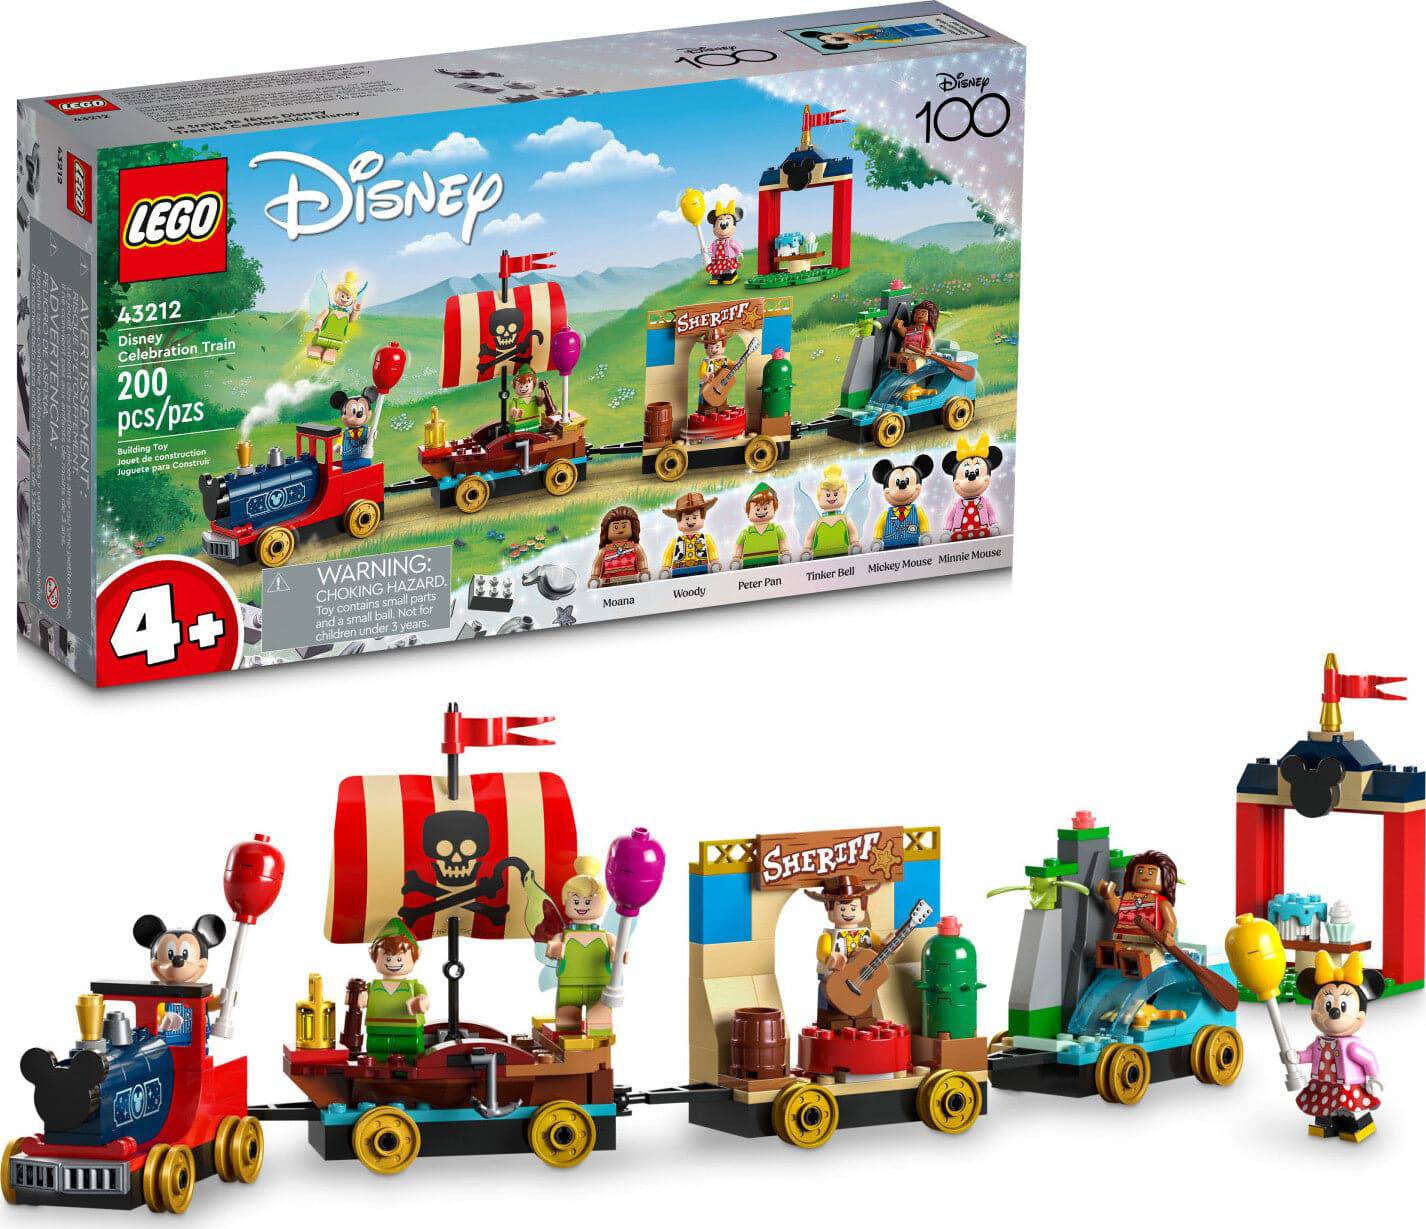 43212 Disney Celebration Train - A Child's Delight